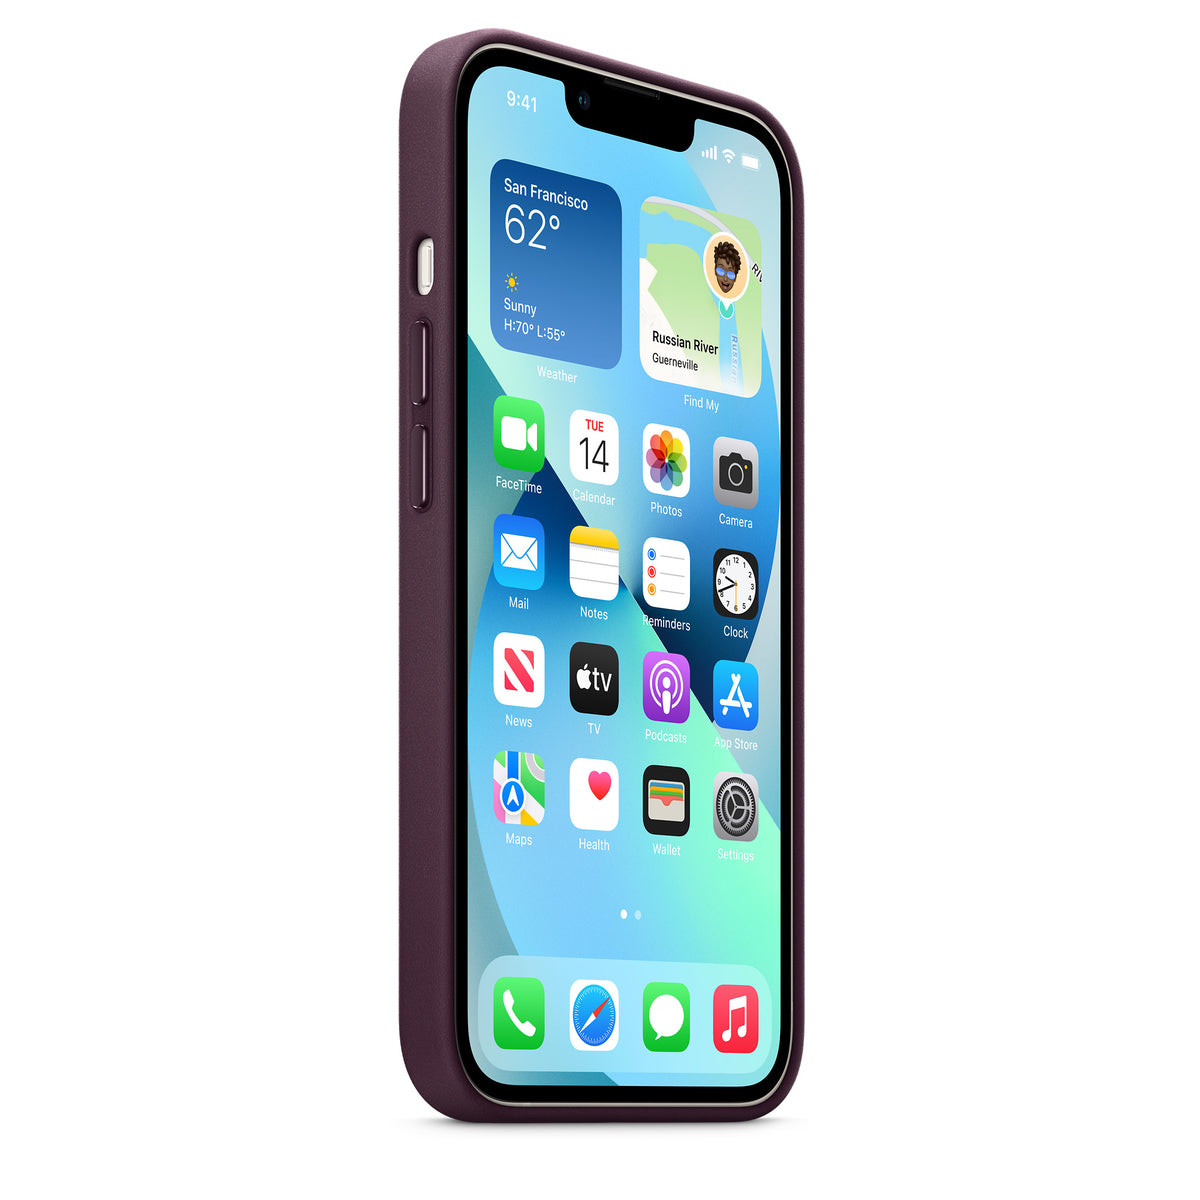 Apple funda de piel con MagSafe para iPhone 13 mini - iShop